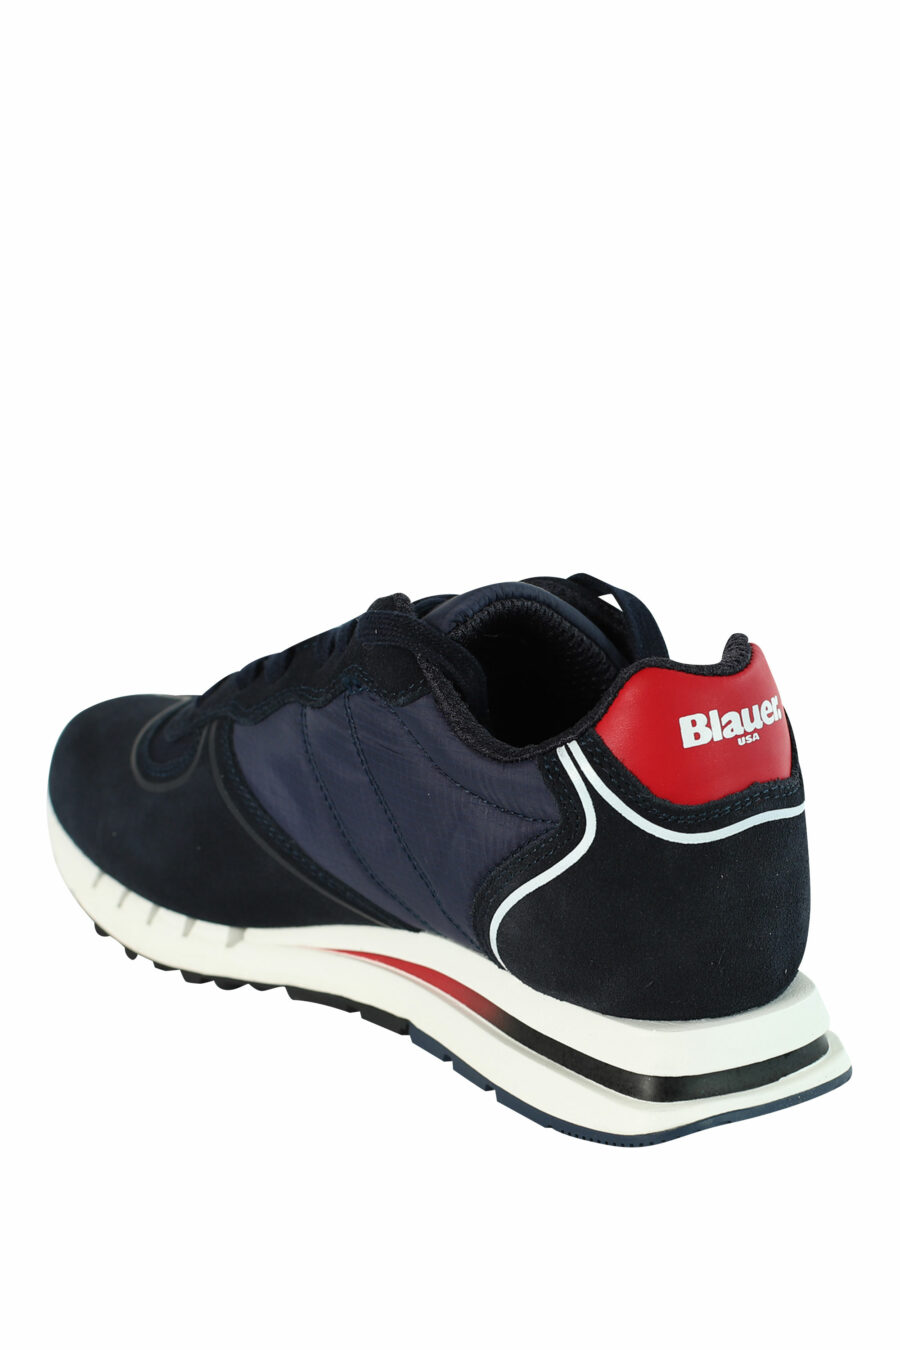 Blaue "QUARTZ" Schuhe mit roten Details - 8058156499454 4